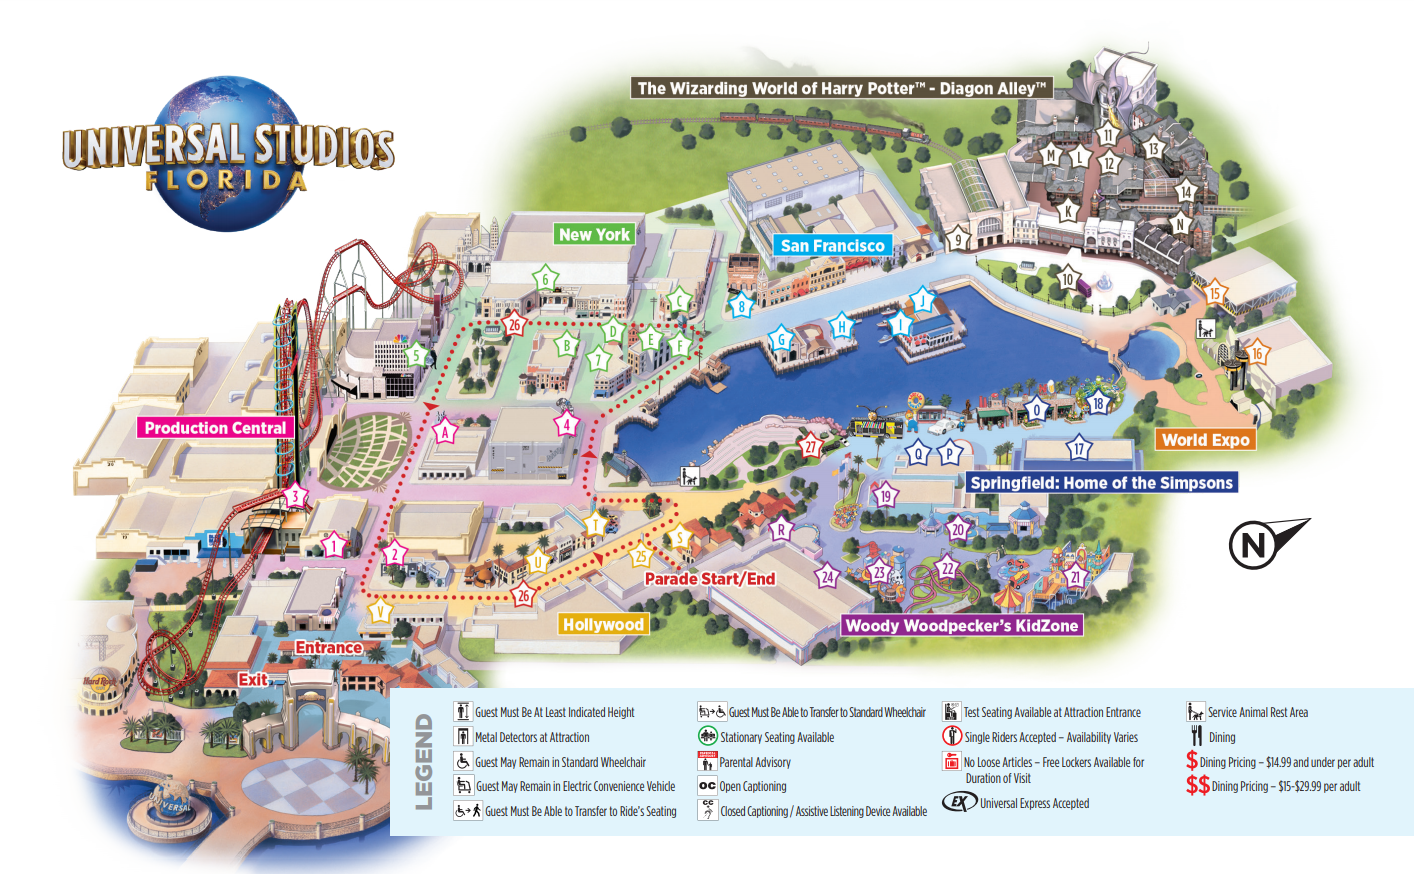 Este es el mapa del parque Universal Studios Florida. Shrek 4-D está en "Production Central".